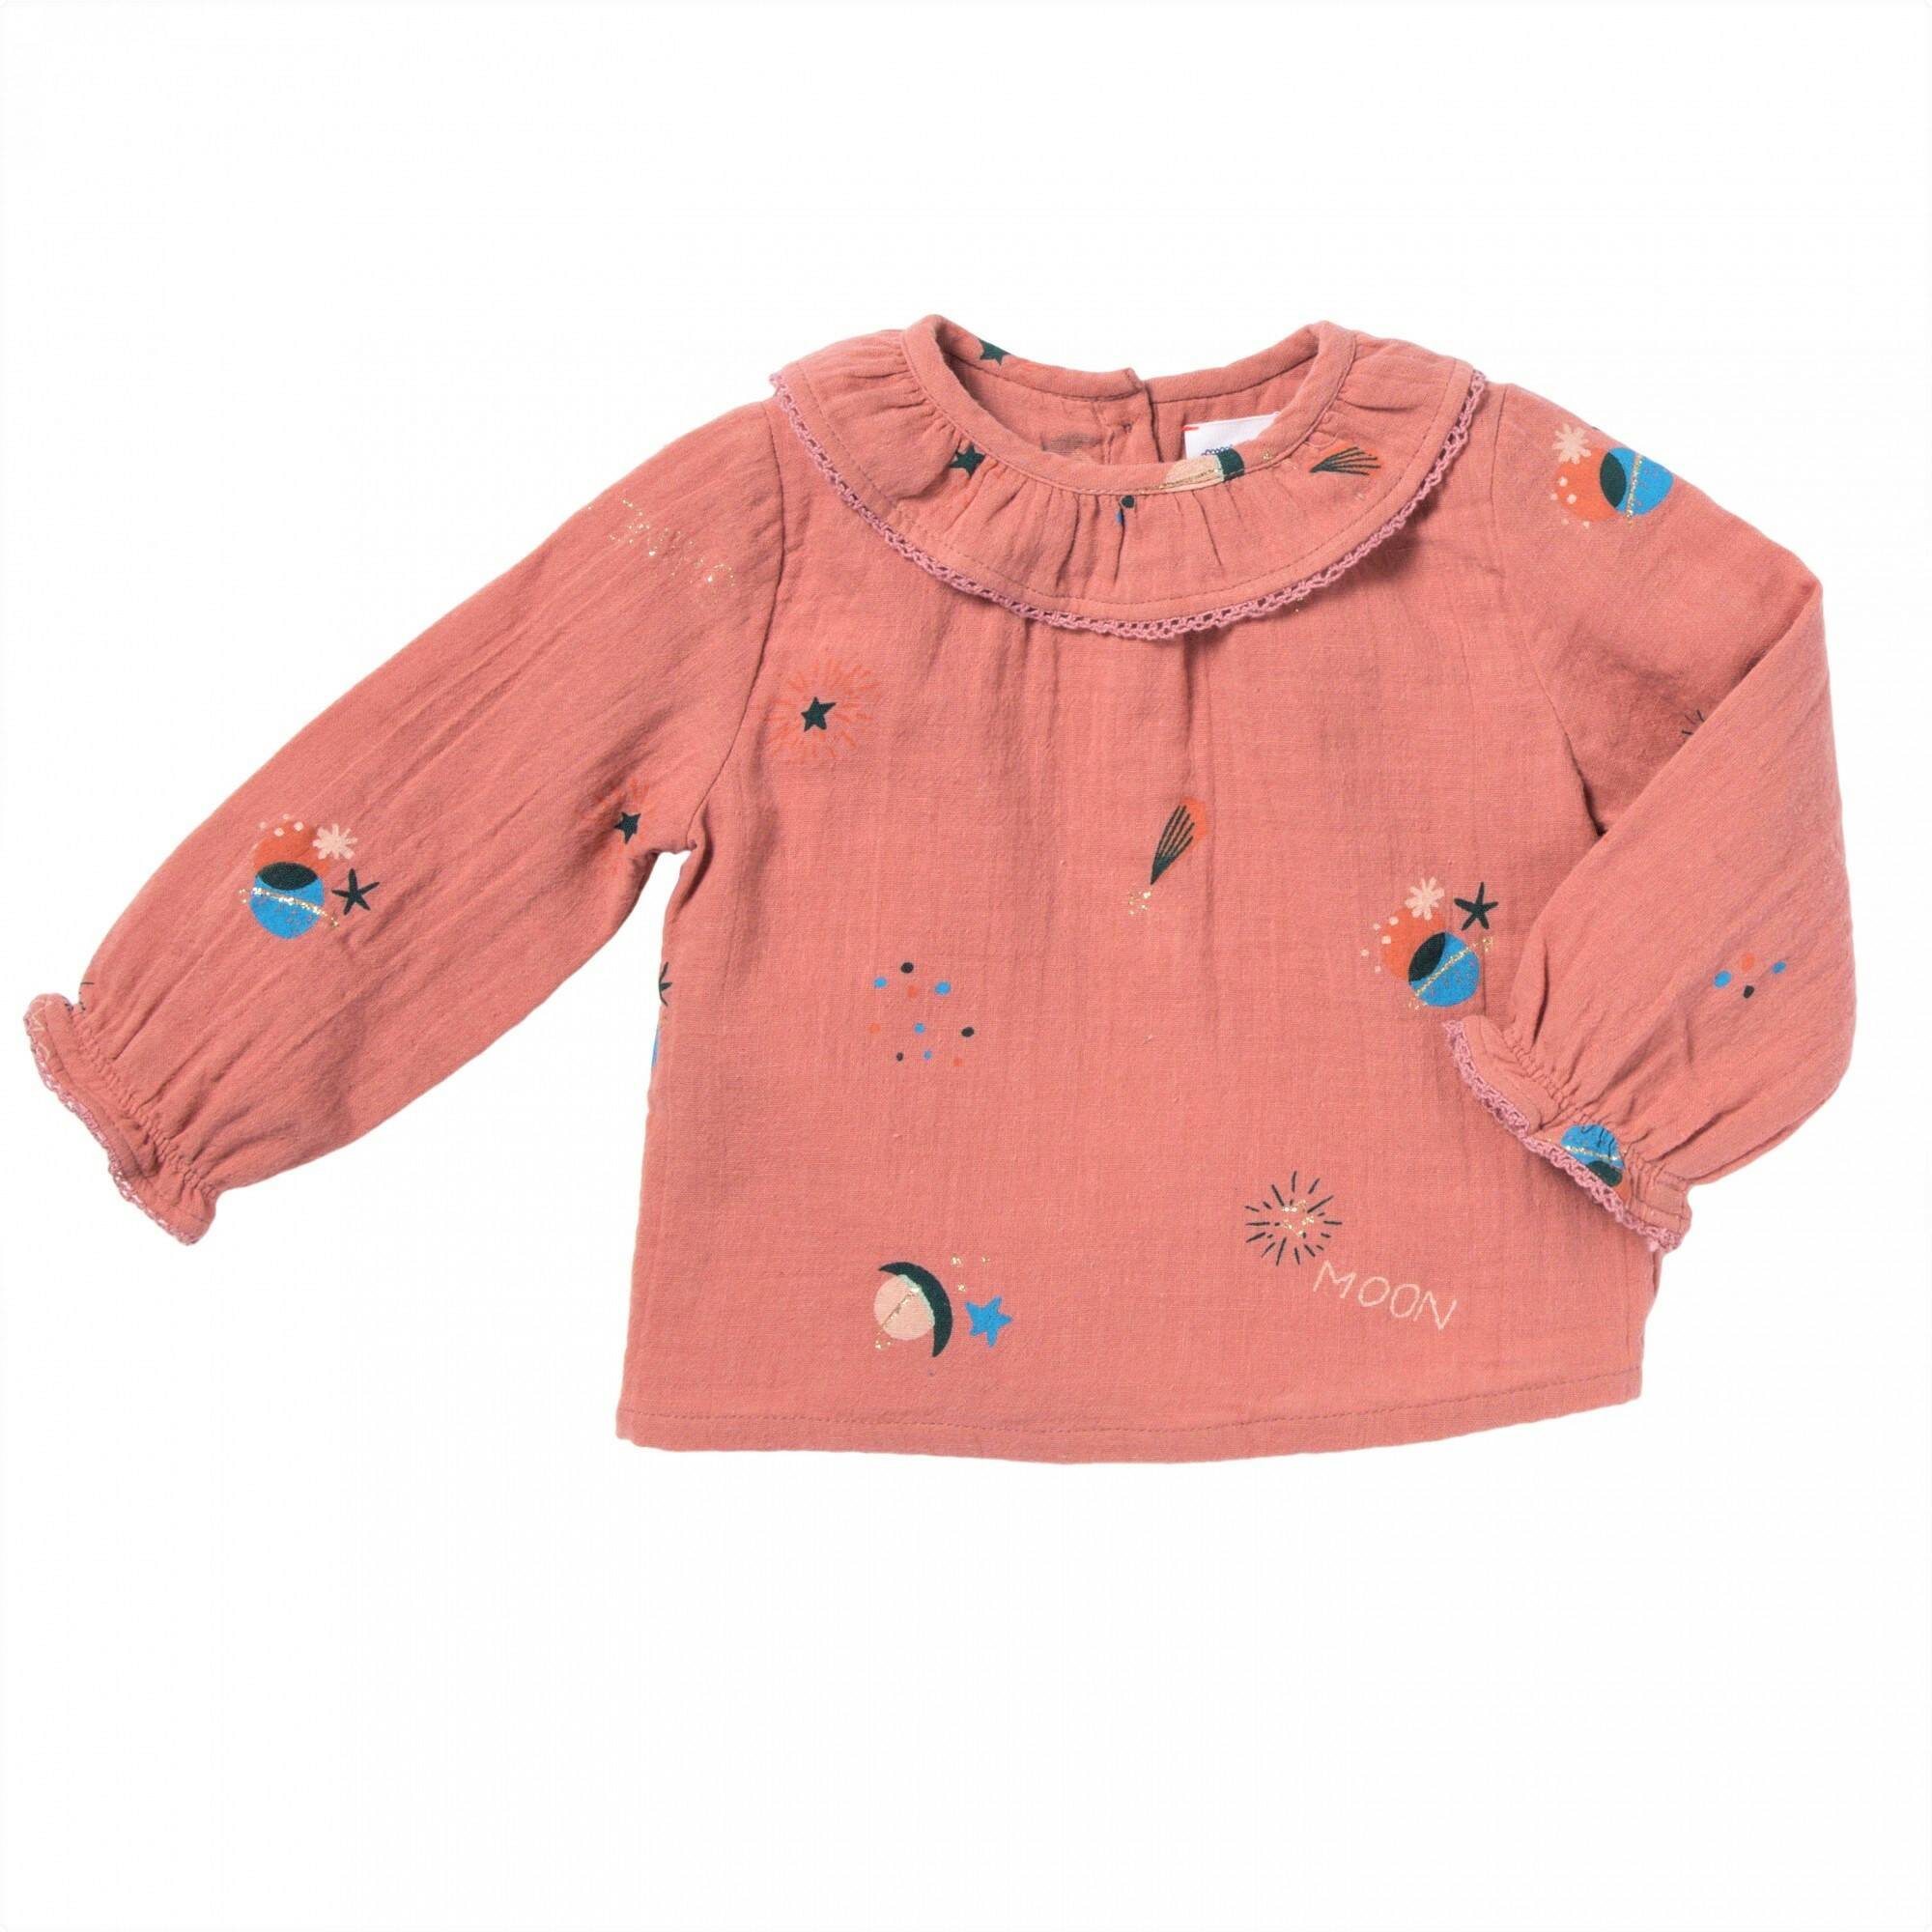 BeeBoo|blouse imprimee celeste et etoiles mercure rose